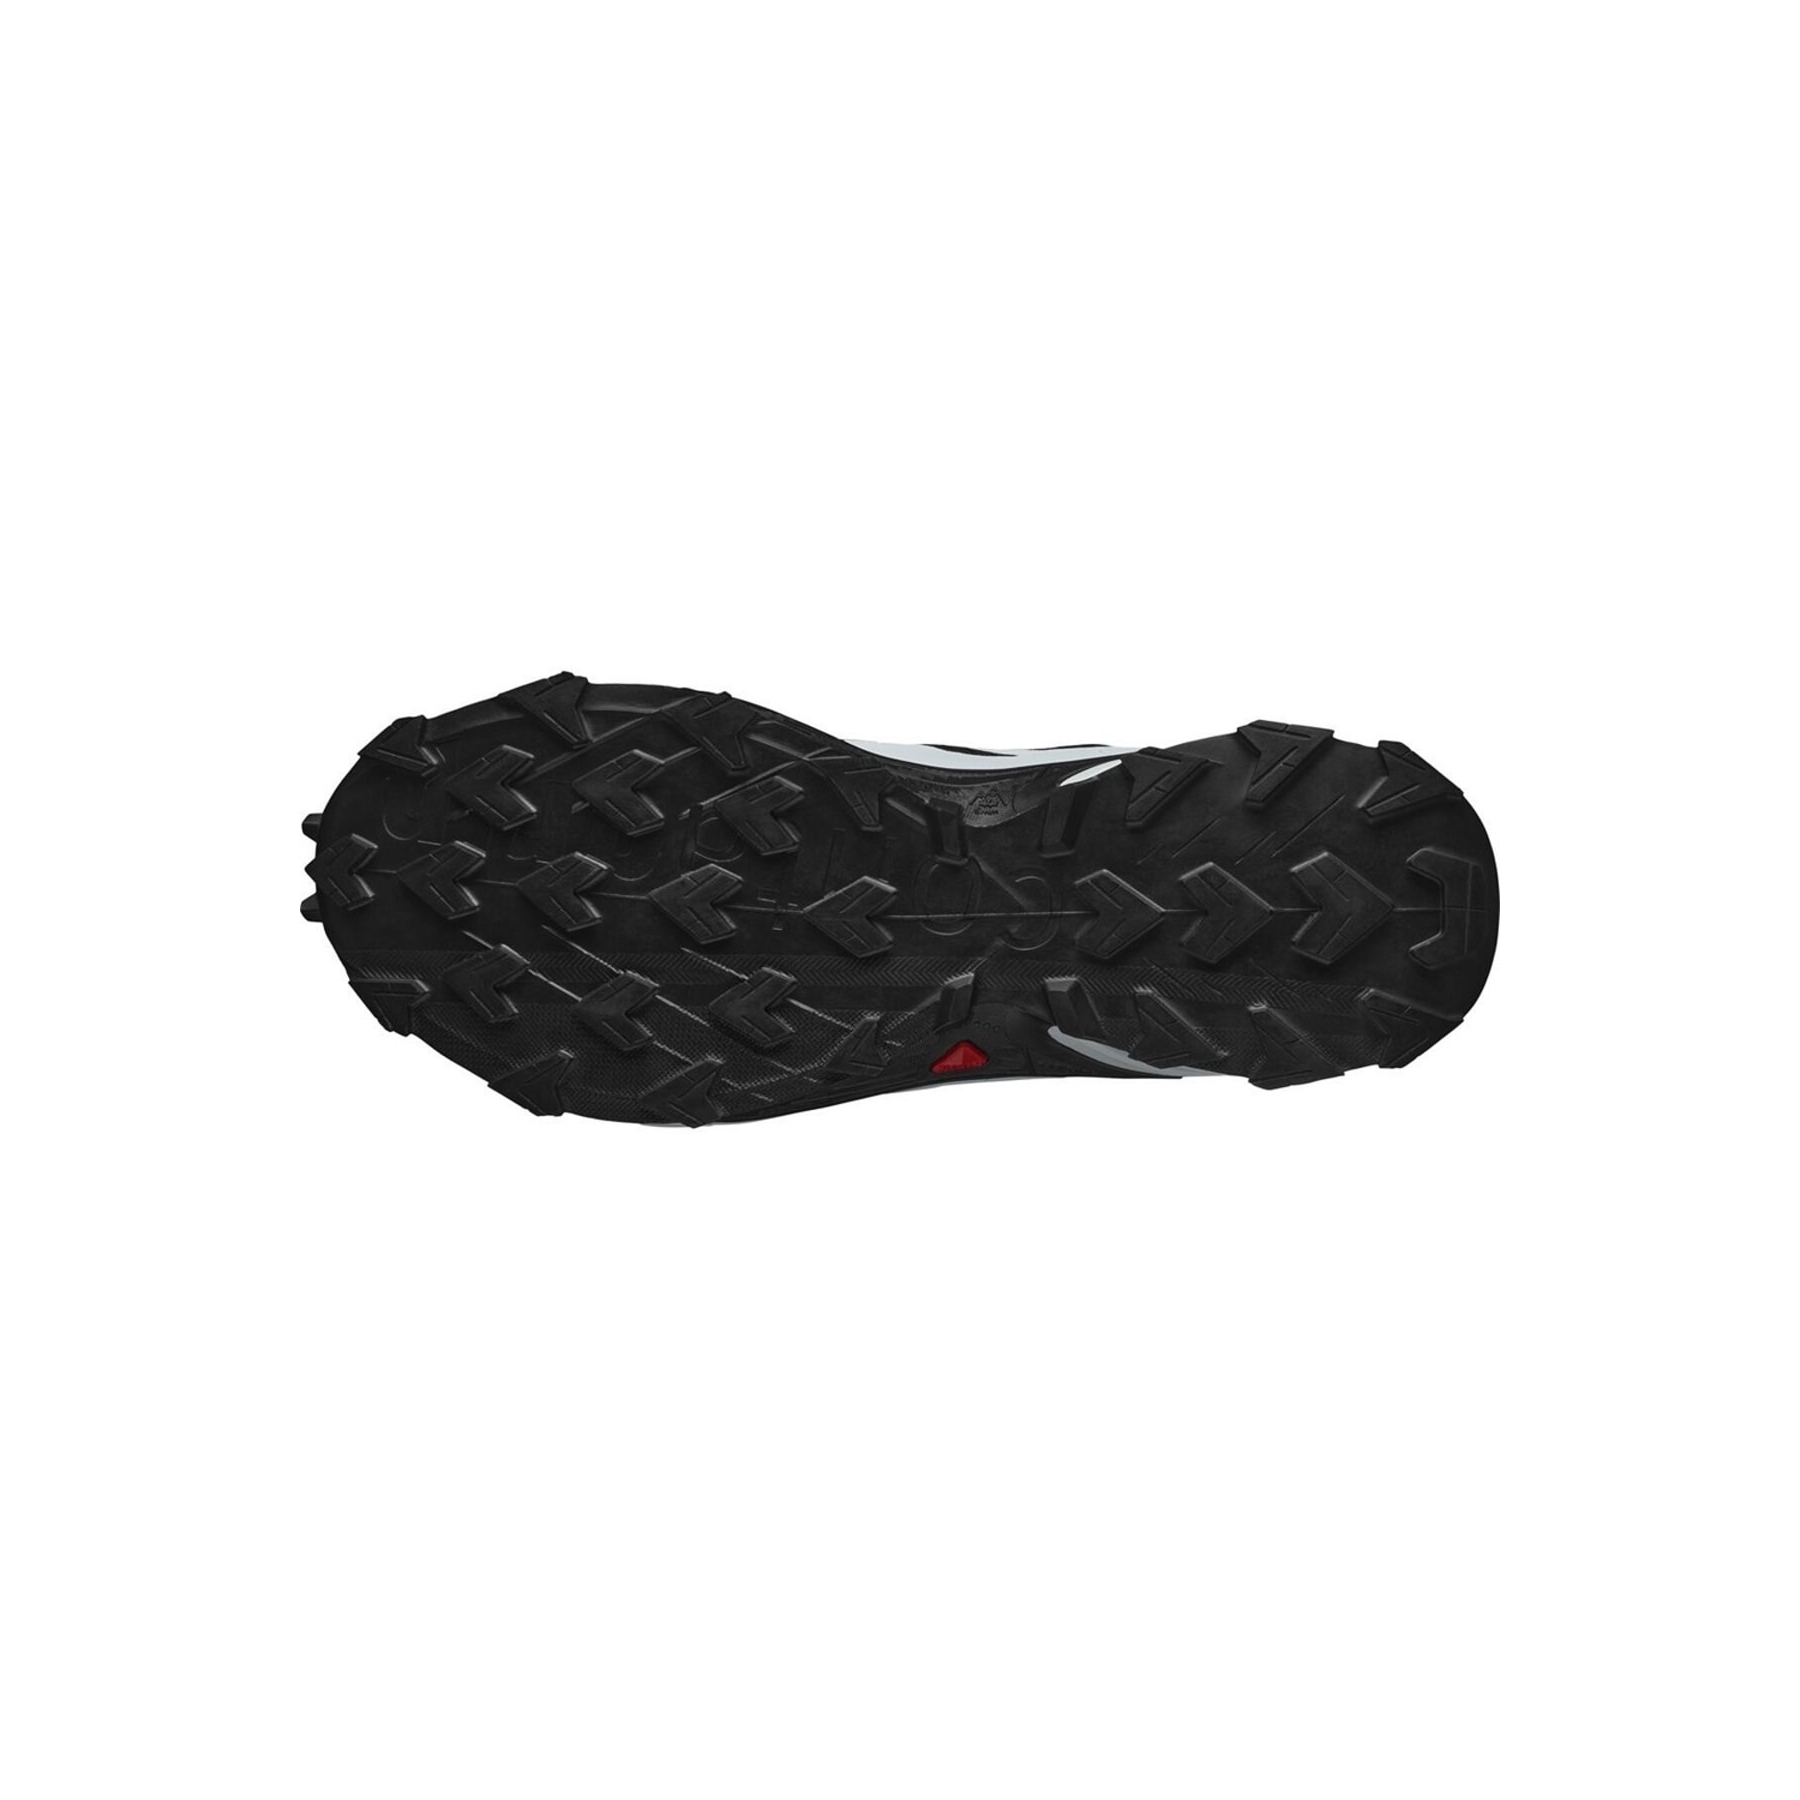 Salomon Supercross 4 Erkek Siyah Outdoor Ayakkabı (L41736600)